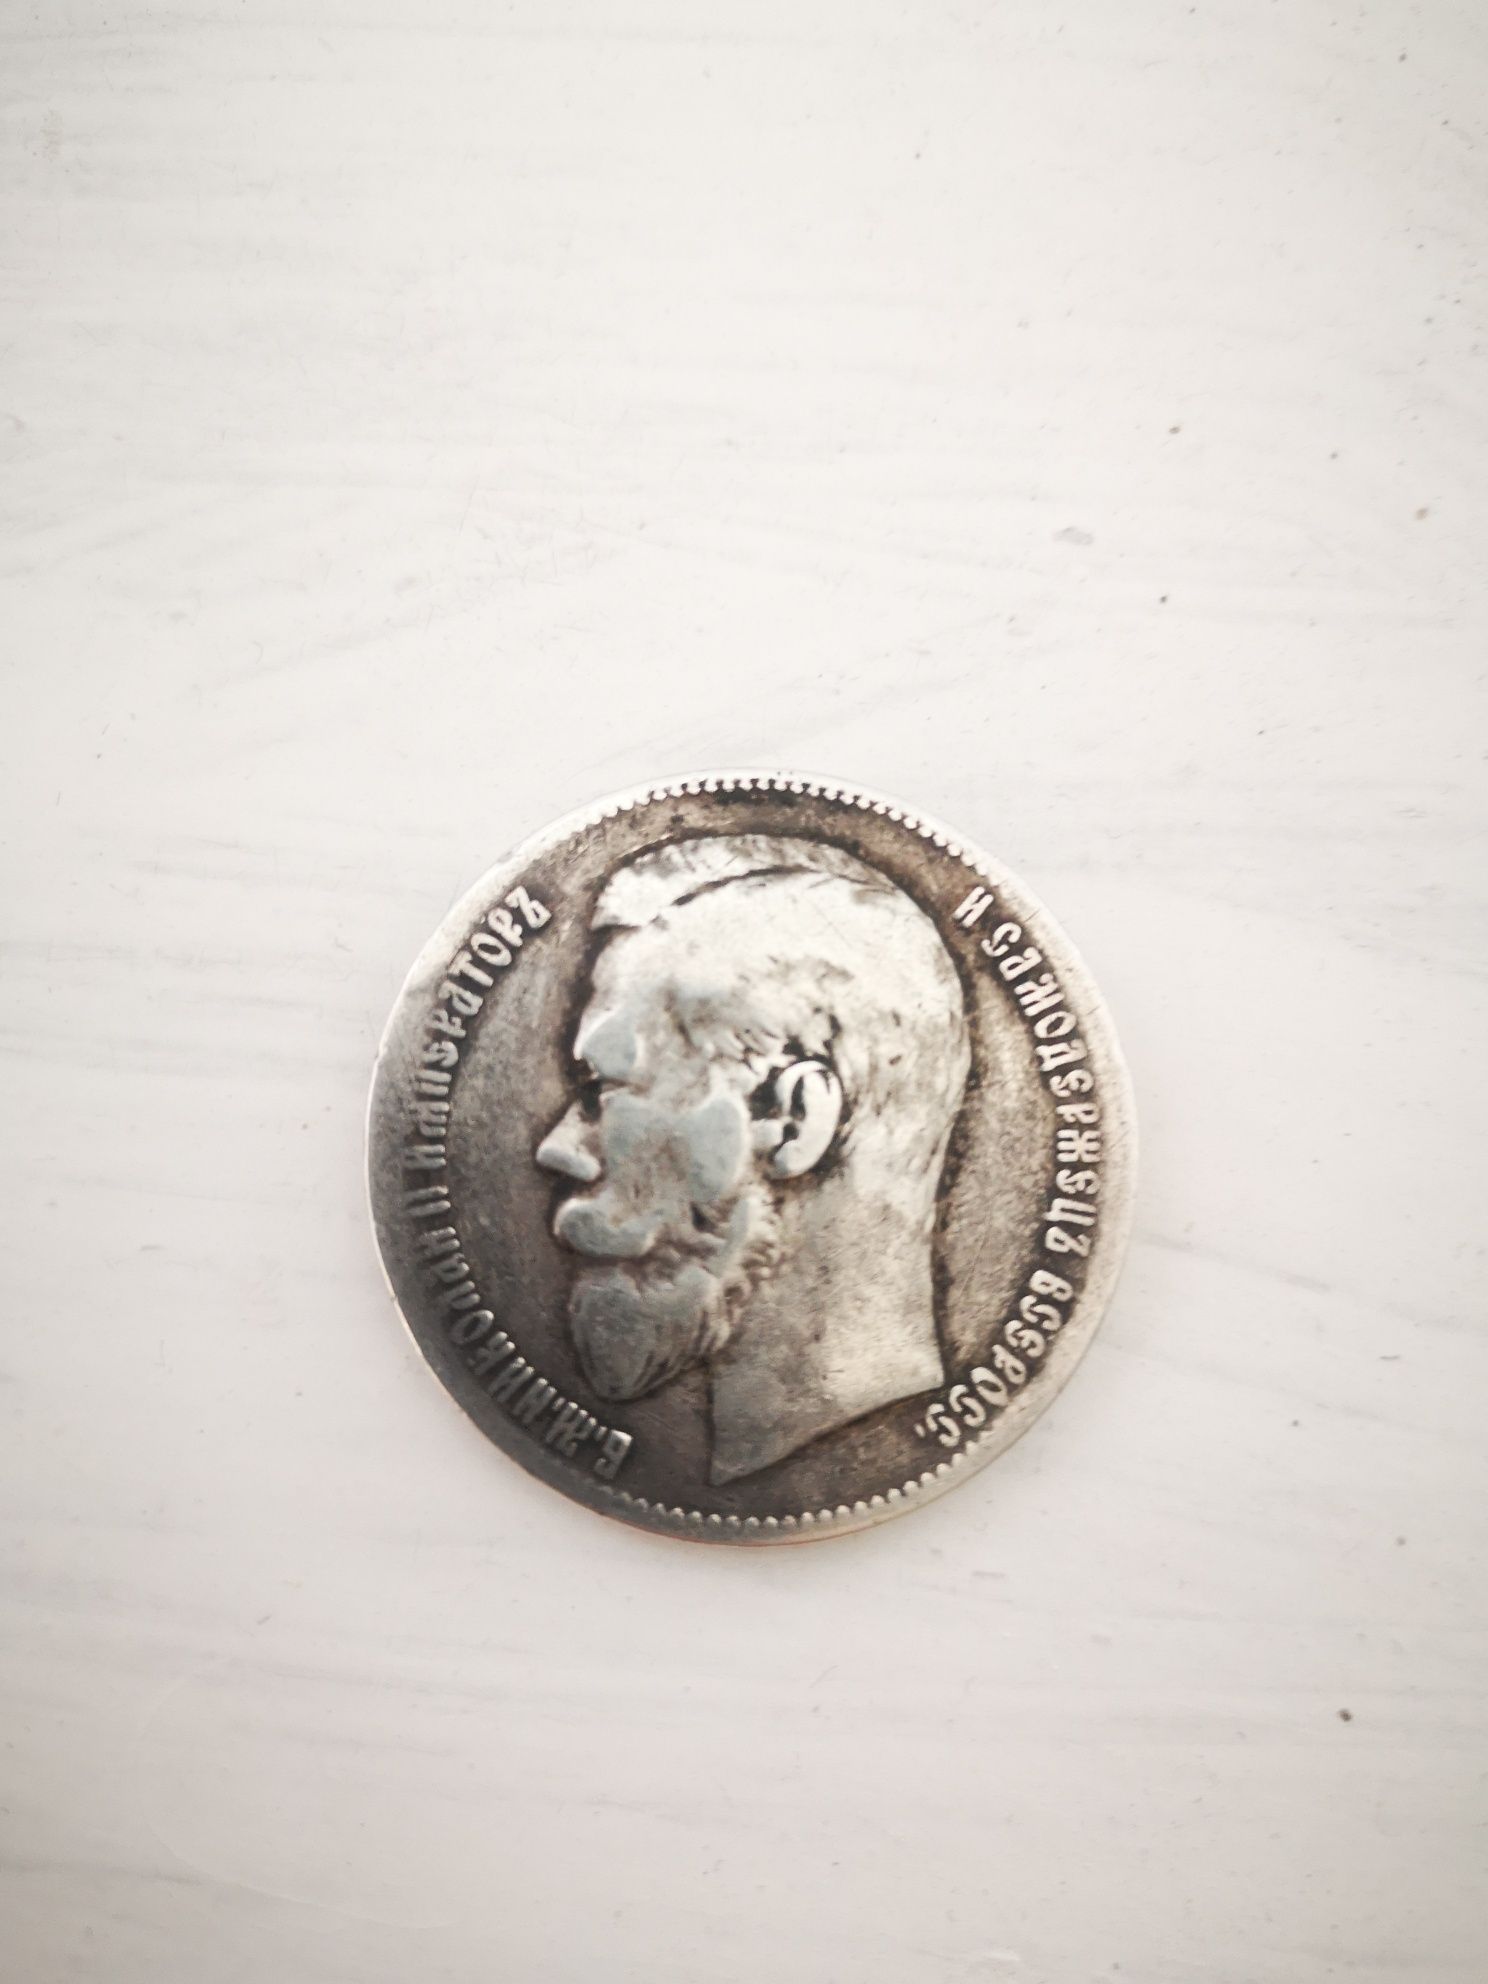 Рубль 1897 рік. Срібна монета. Хороший стан.